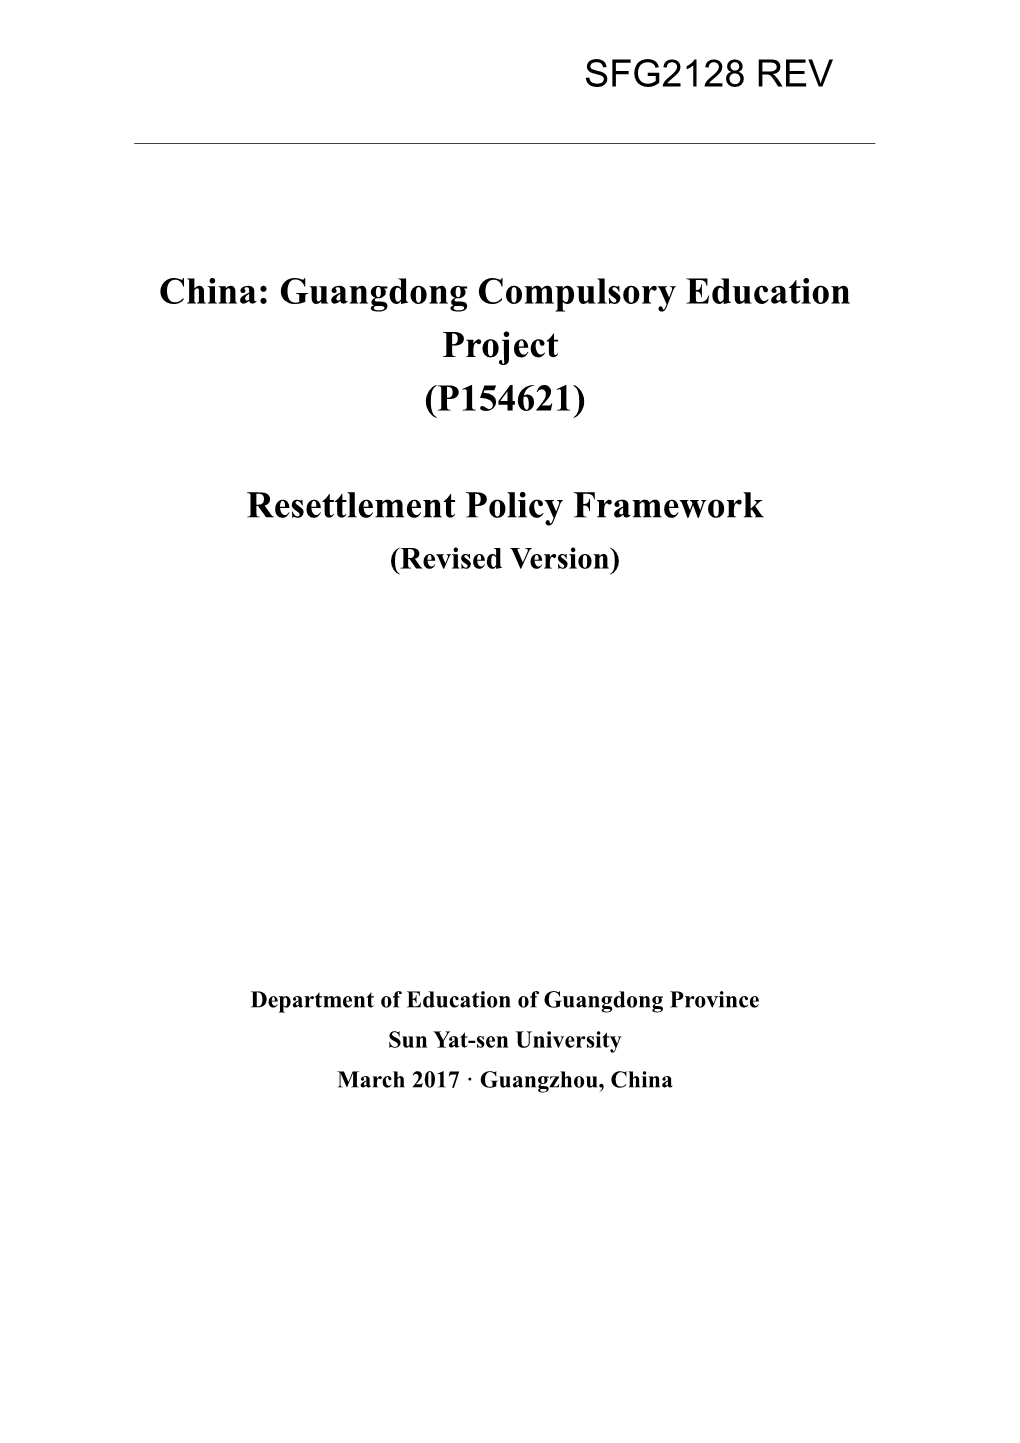 China: Guangdong Compulsory Education Project